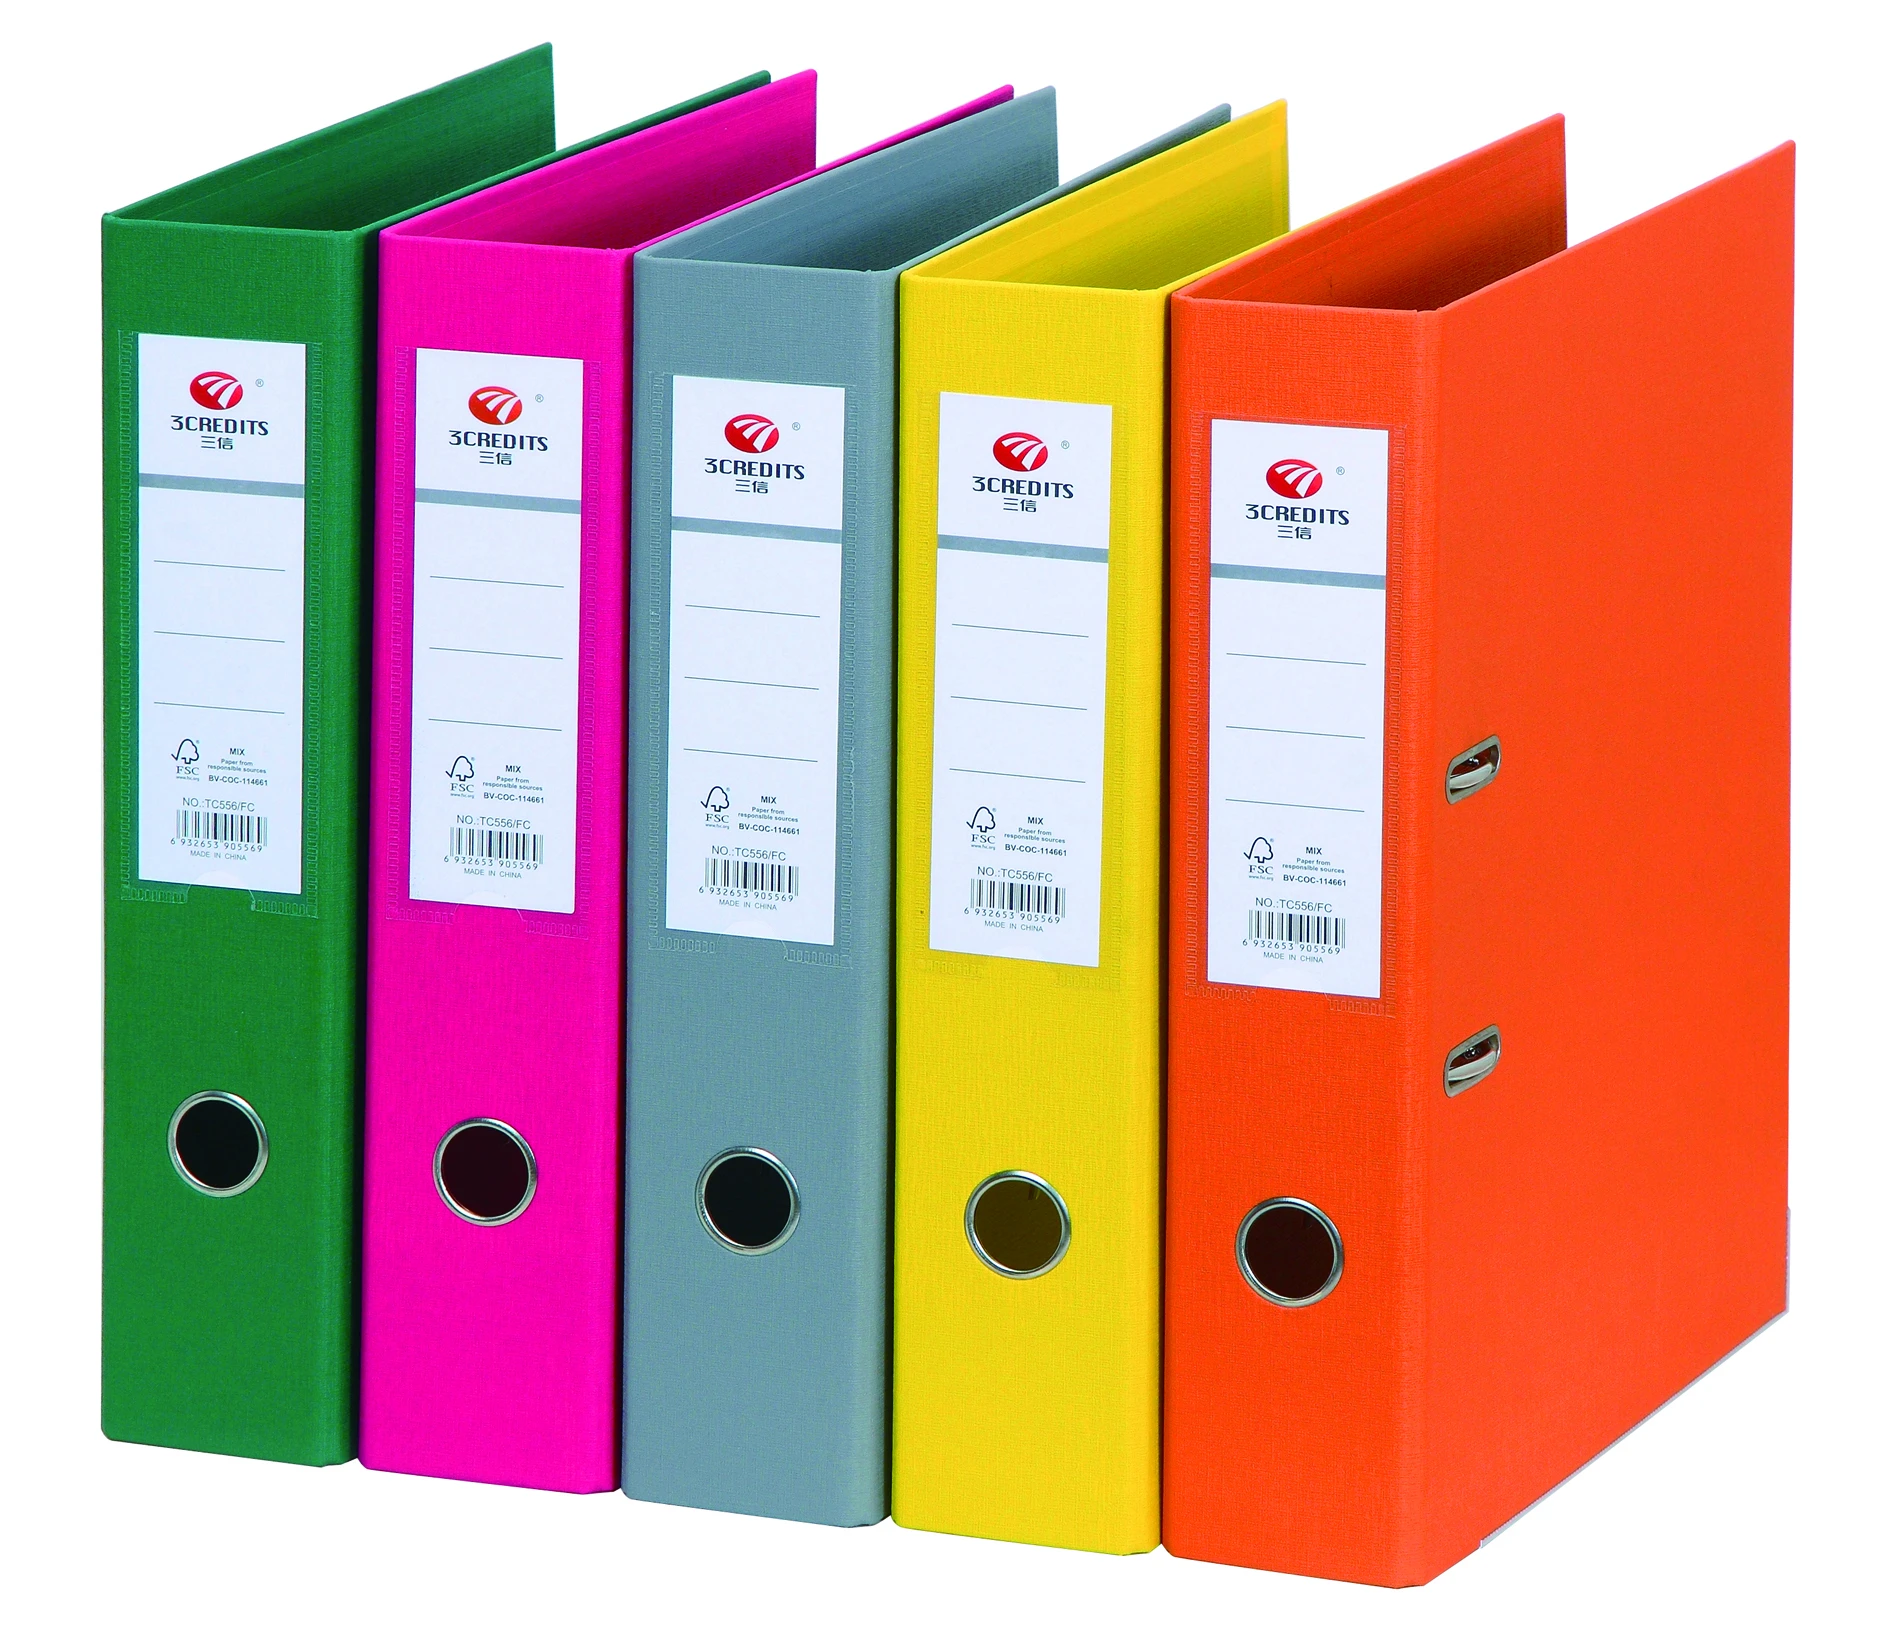 box file lever arch file FC size paper folder 2 hole lever arch file folder office stationery